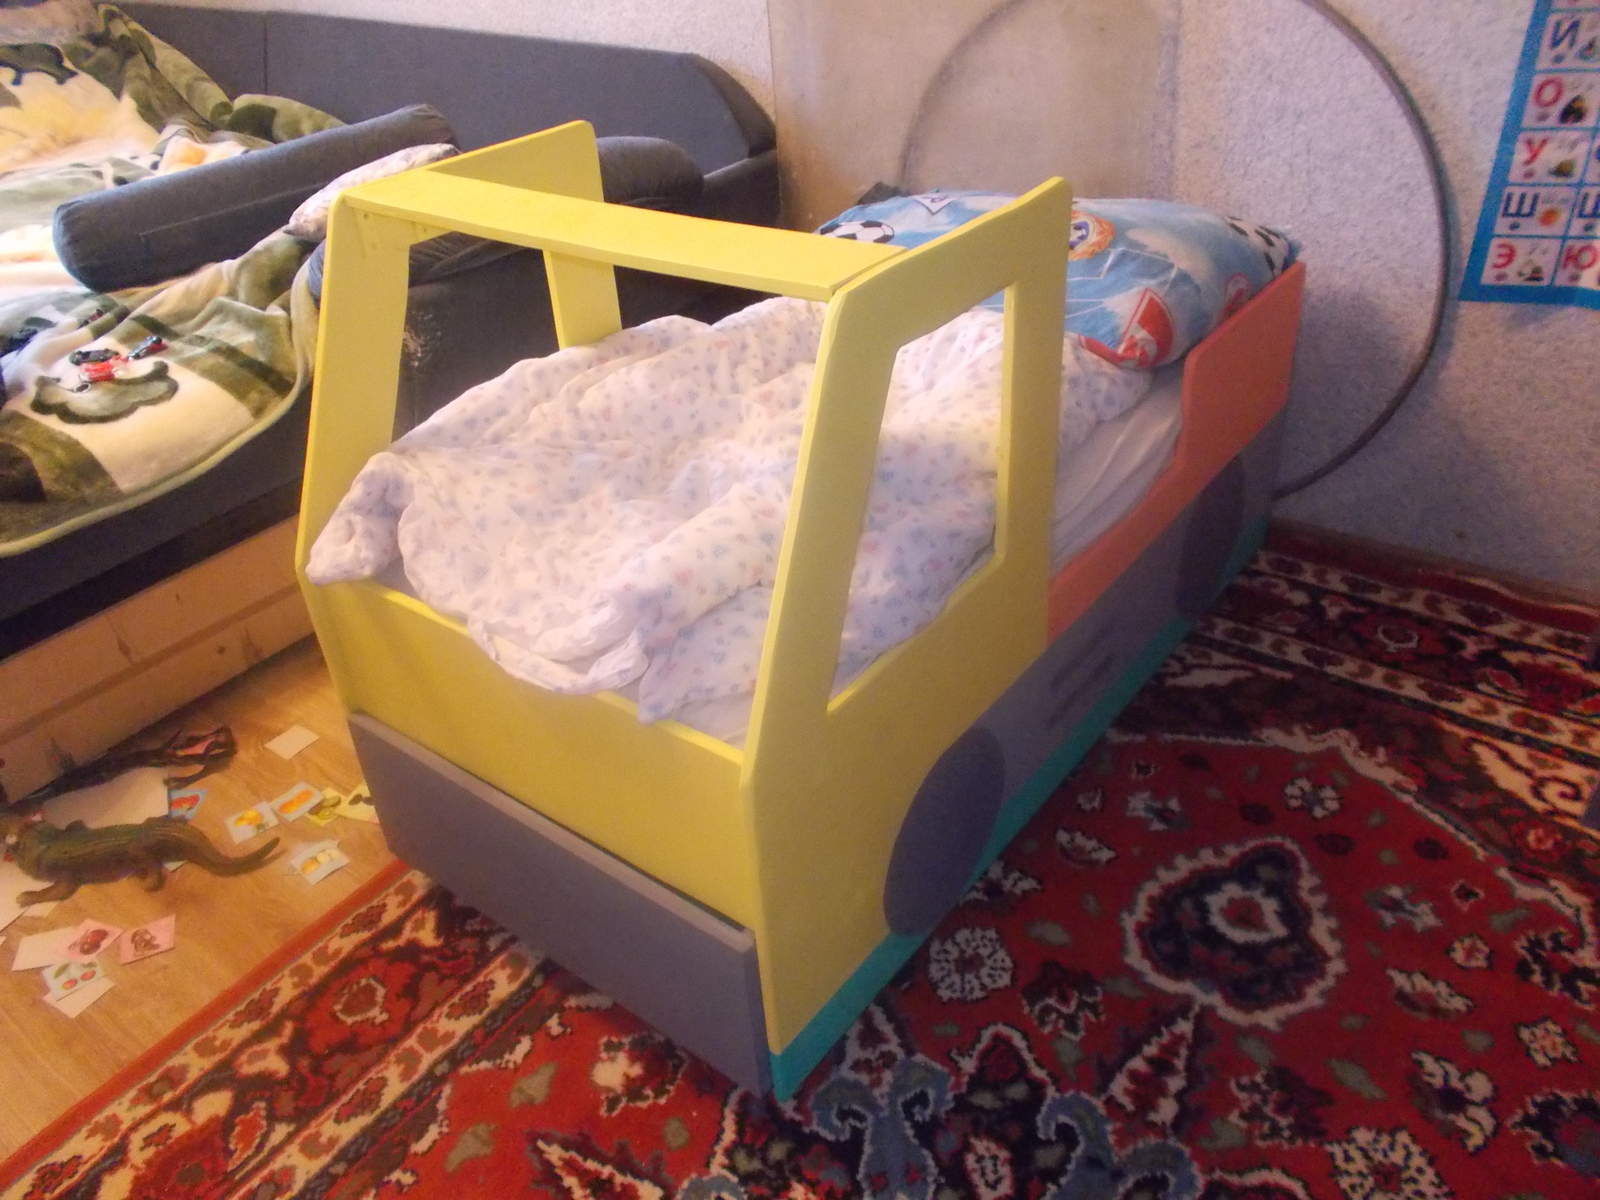 Порадуйте своего ребенка сделав из детской кровати кровать-машину своими руками